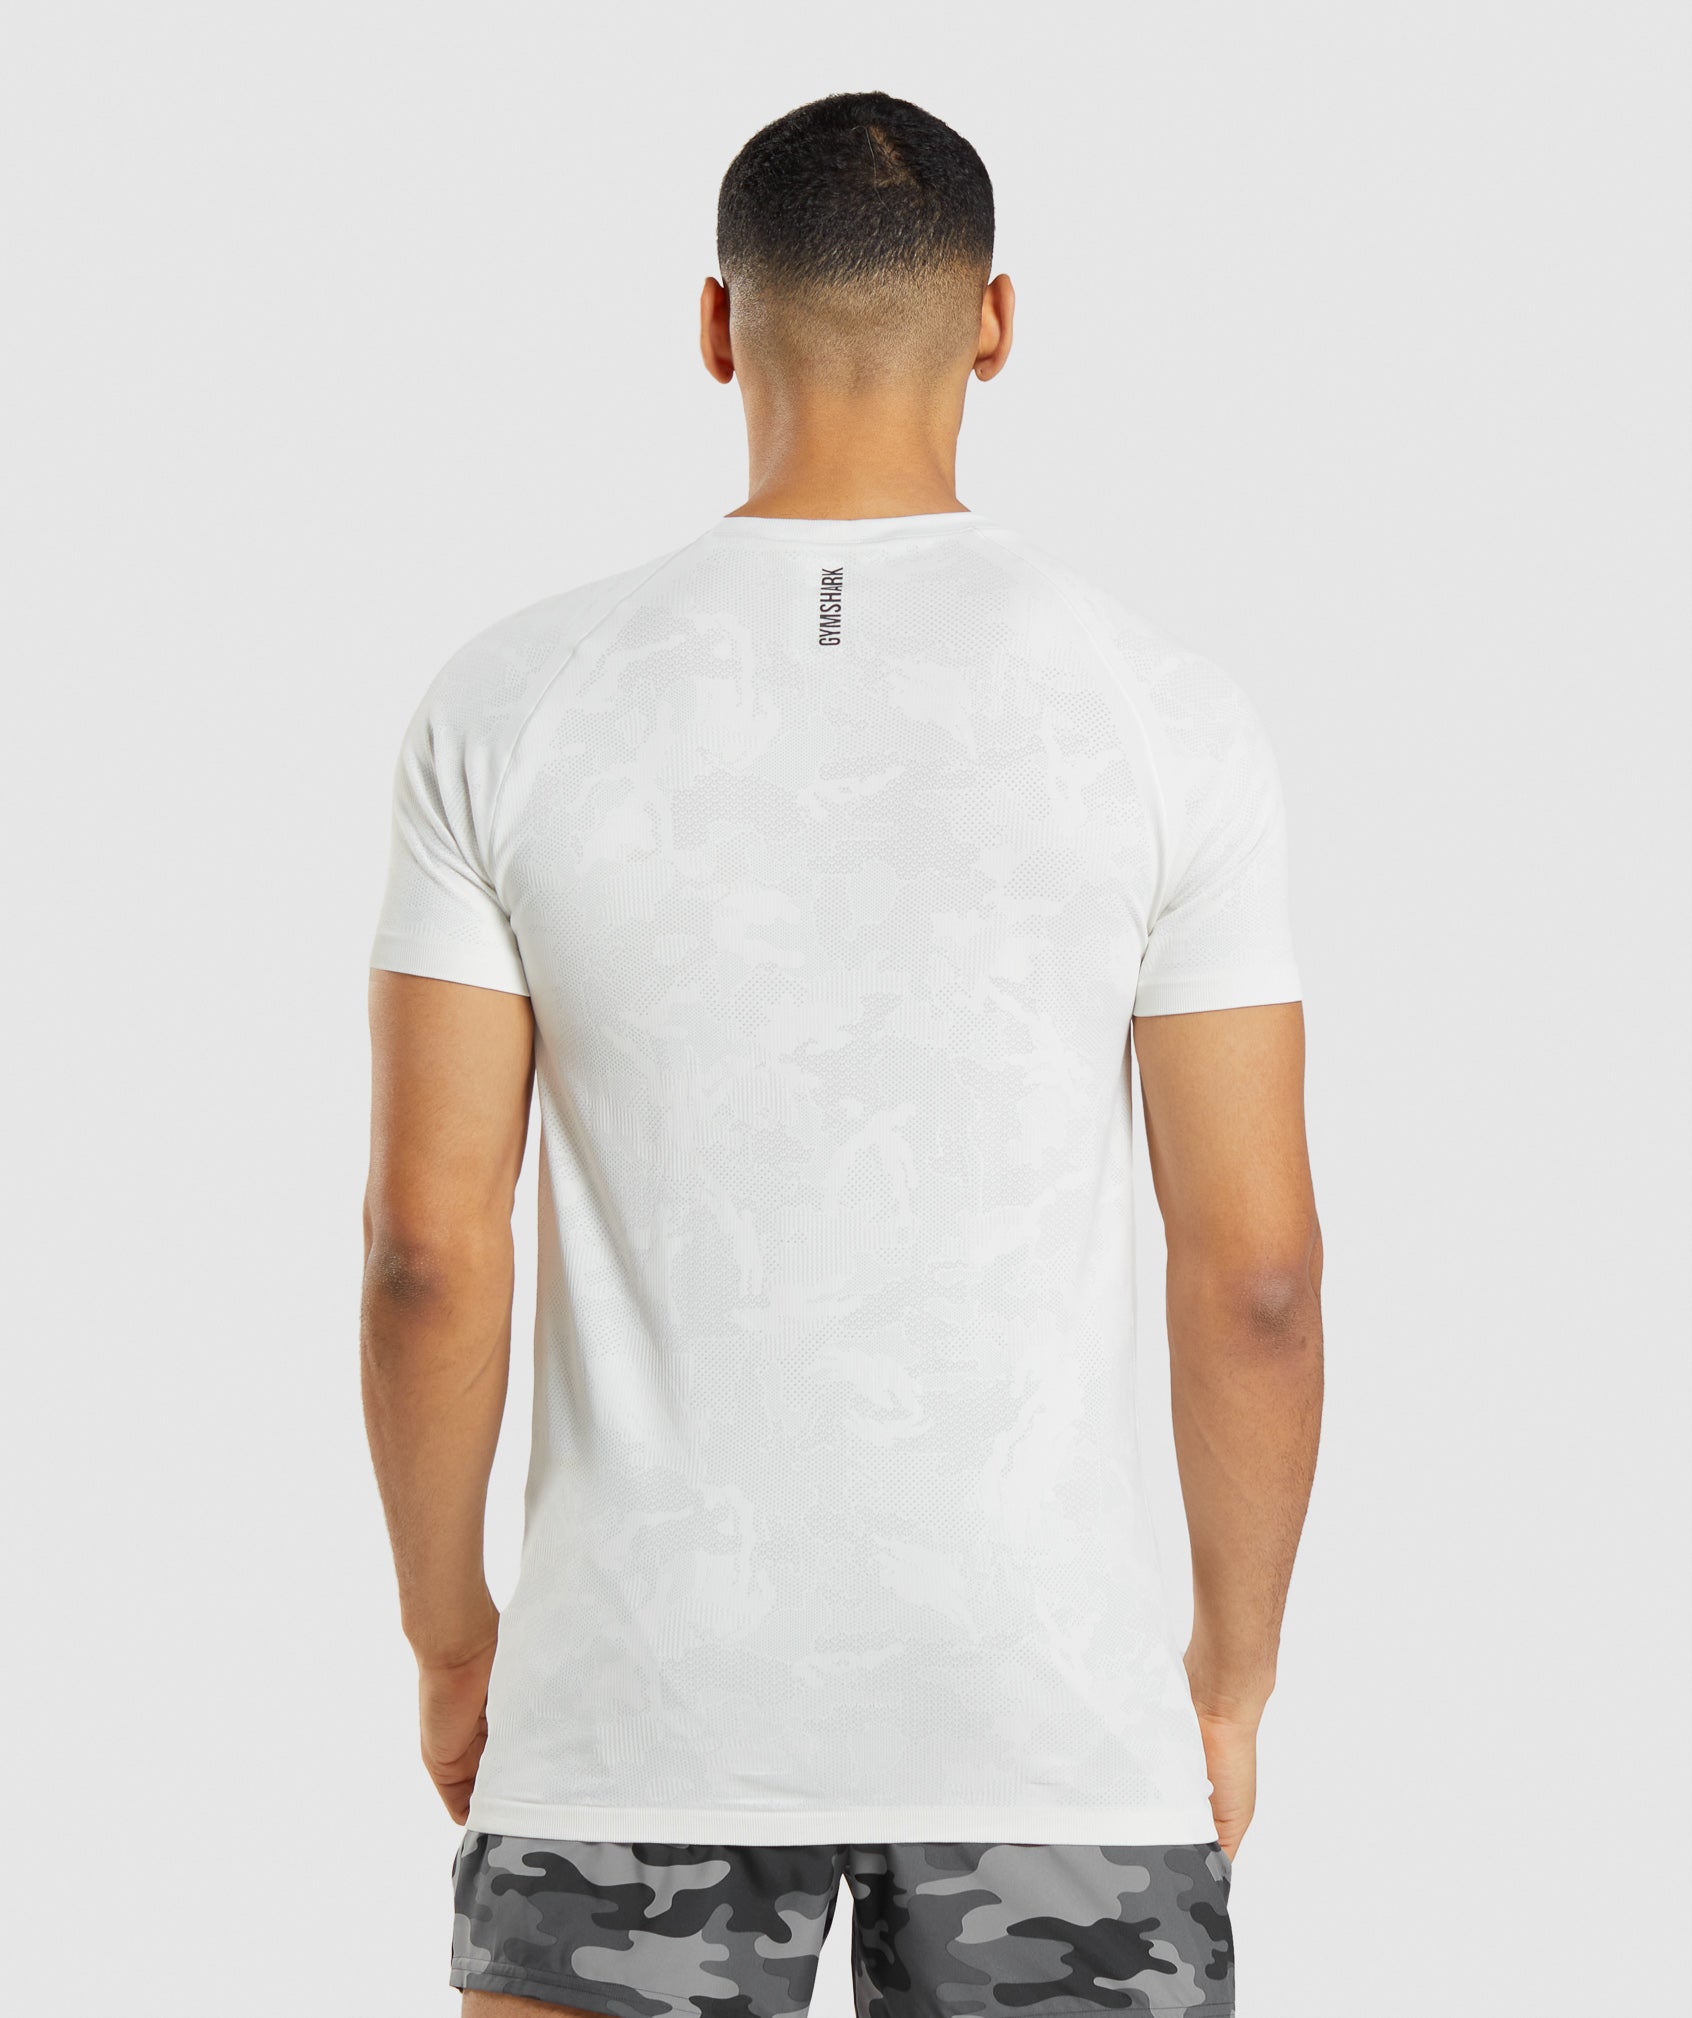 Gymshark Short Sleeve White Athletic T-Shirt Mens S